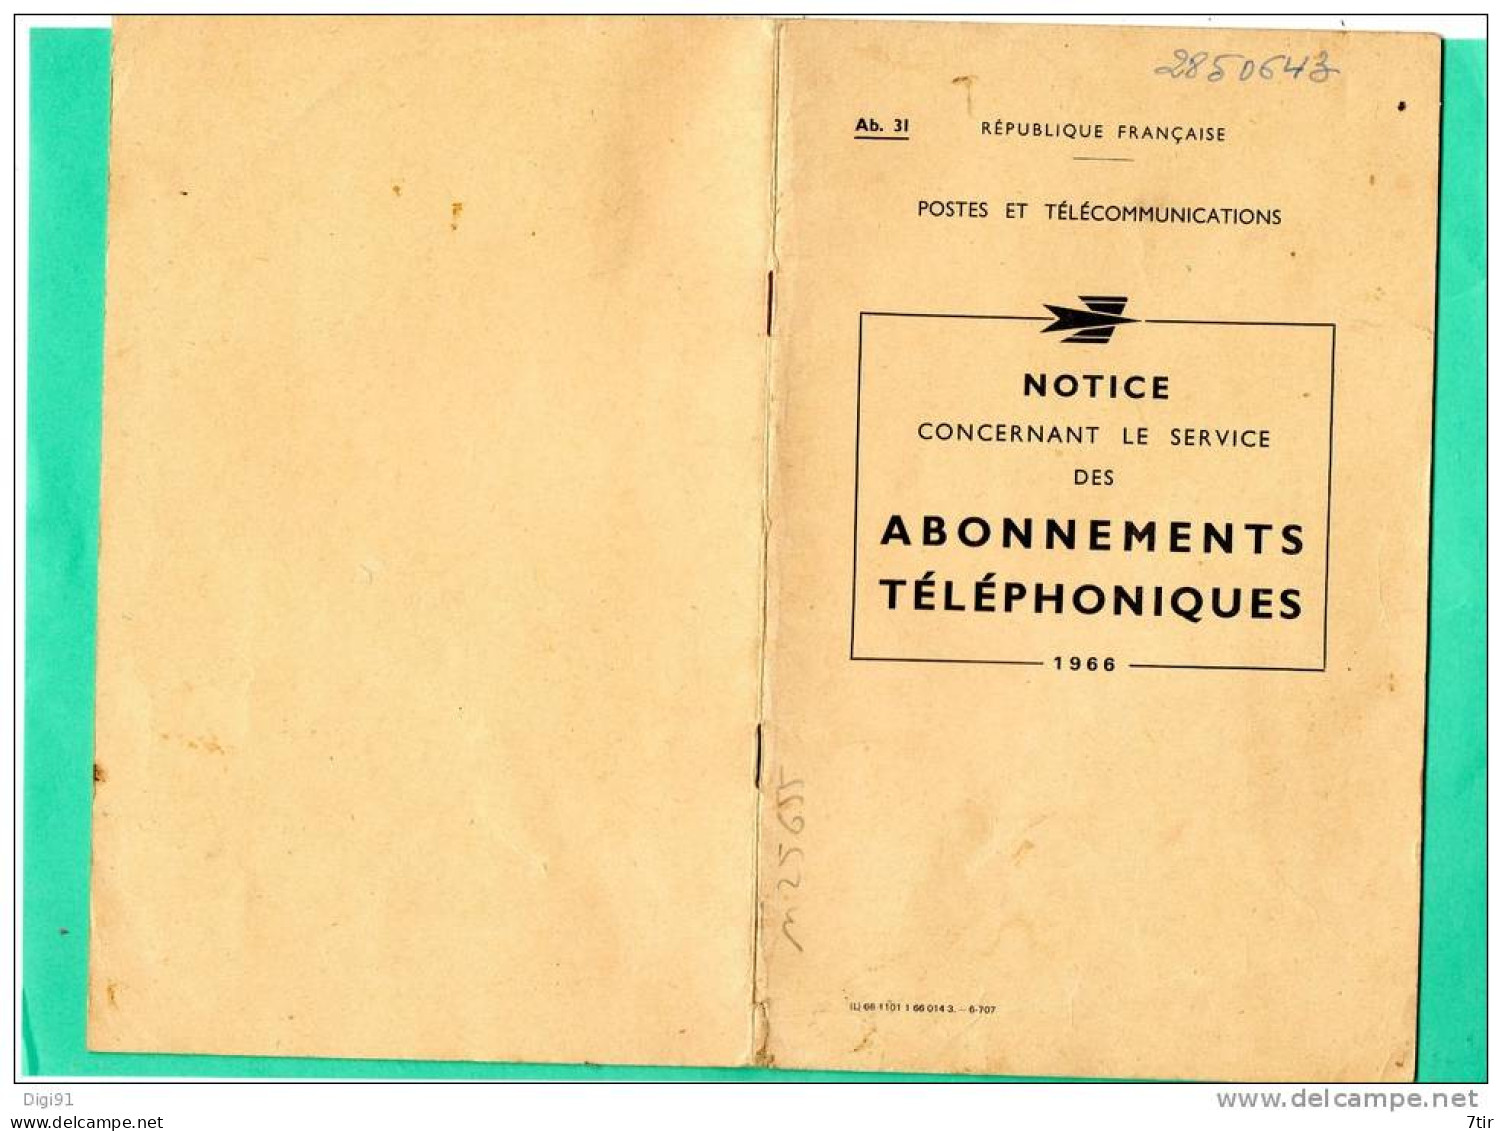 POSTES ET TELECOMMUNICATIONS NOTICE CONCERNANT LES ABONNEMENTS TELEPHONIQUES 1966 - Andere Pläne